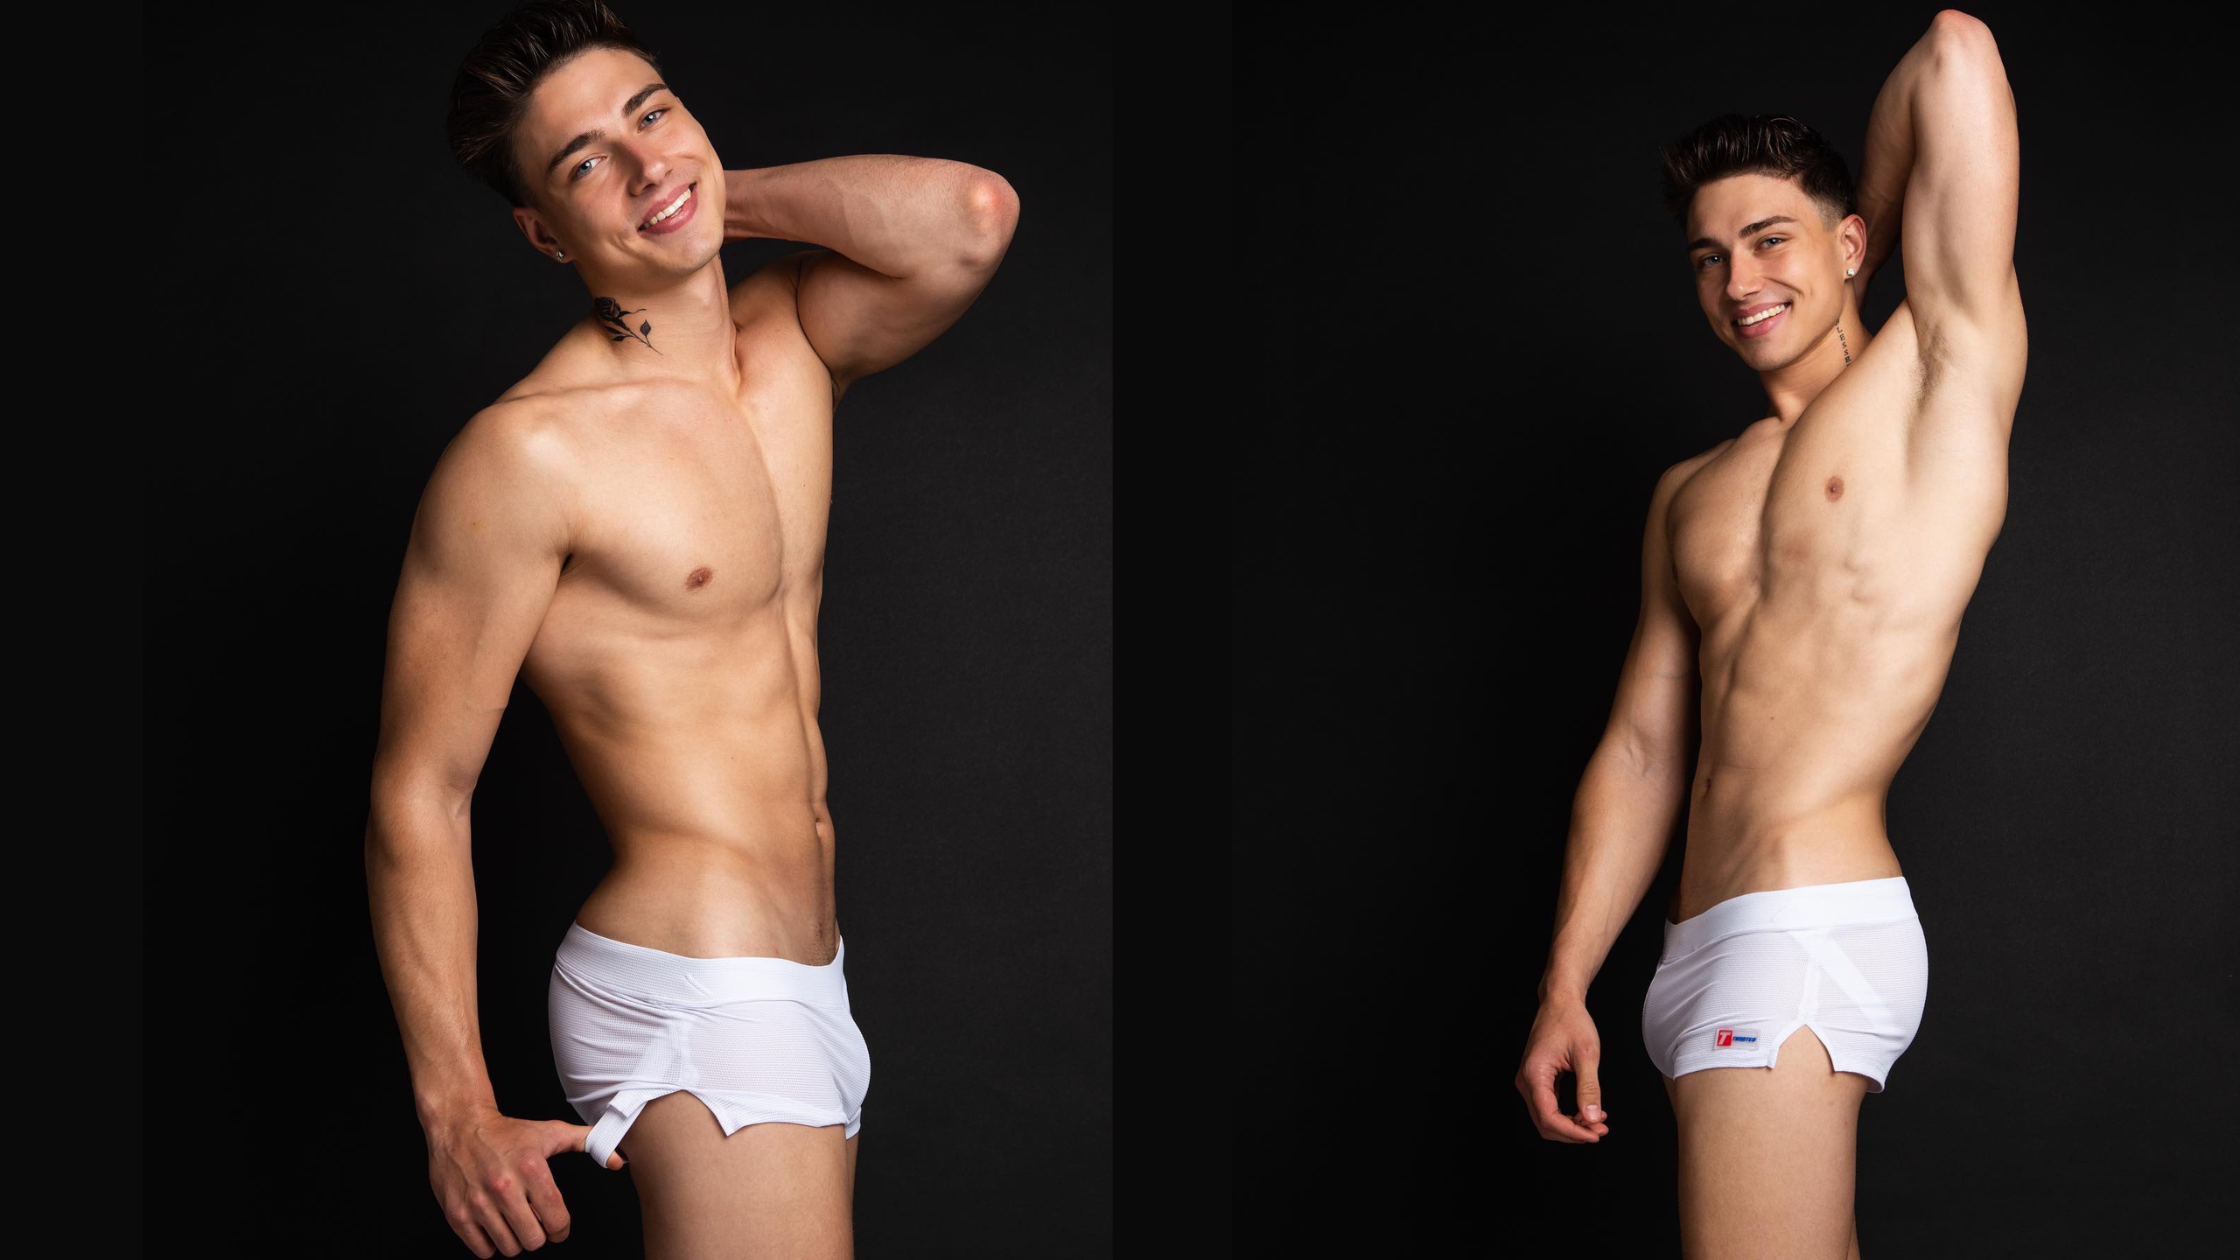 Types of Underwear Gay Men Simply Love - TasteeTreasurs